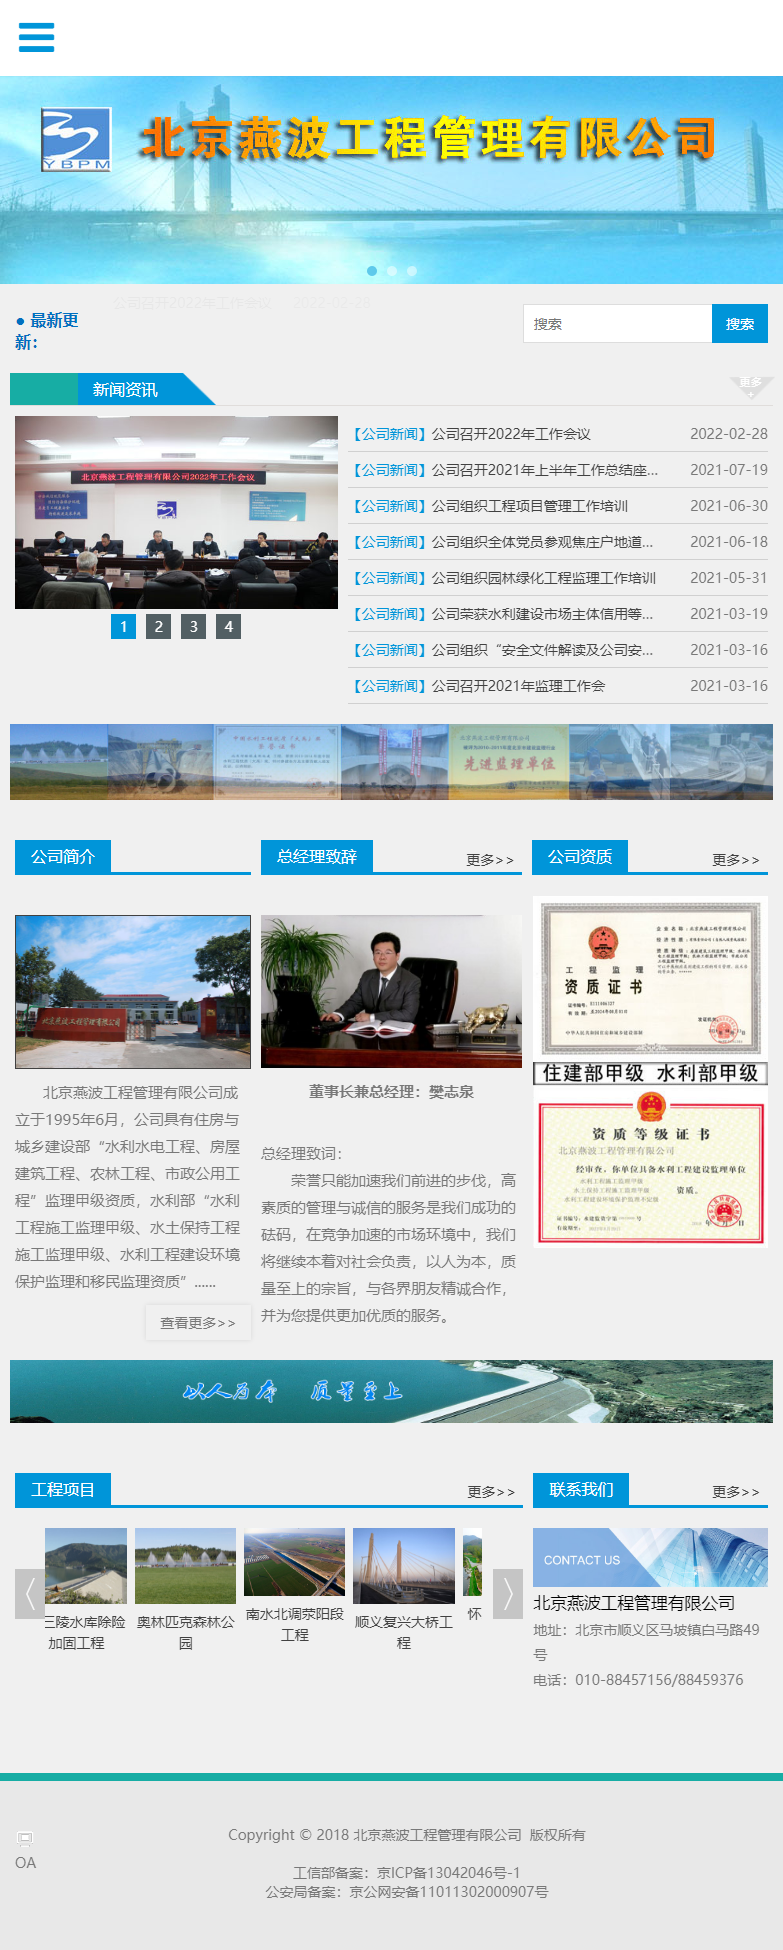 北京燕波工程管理有限公司网站案例